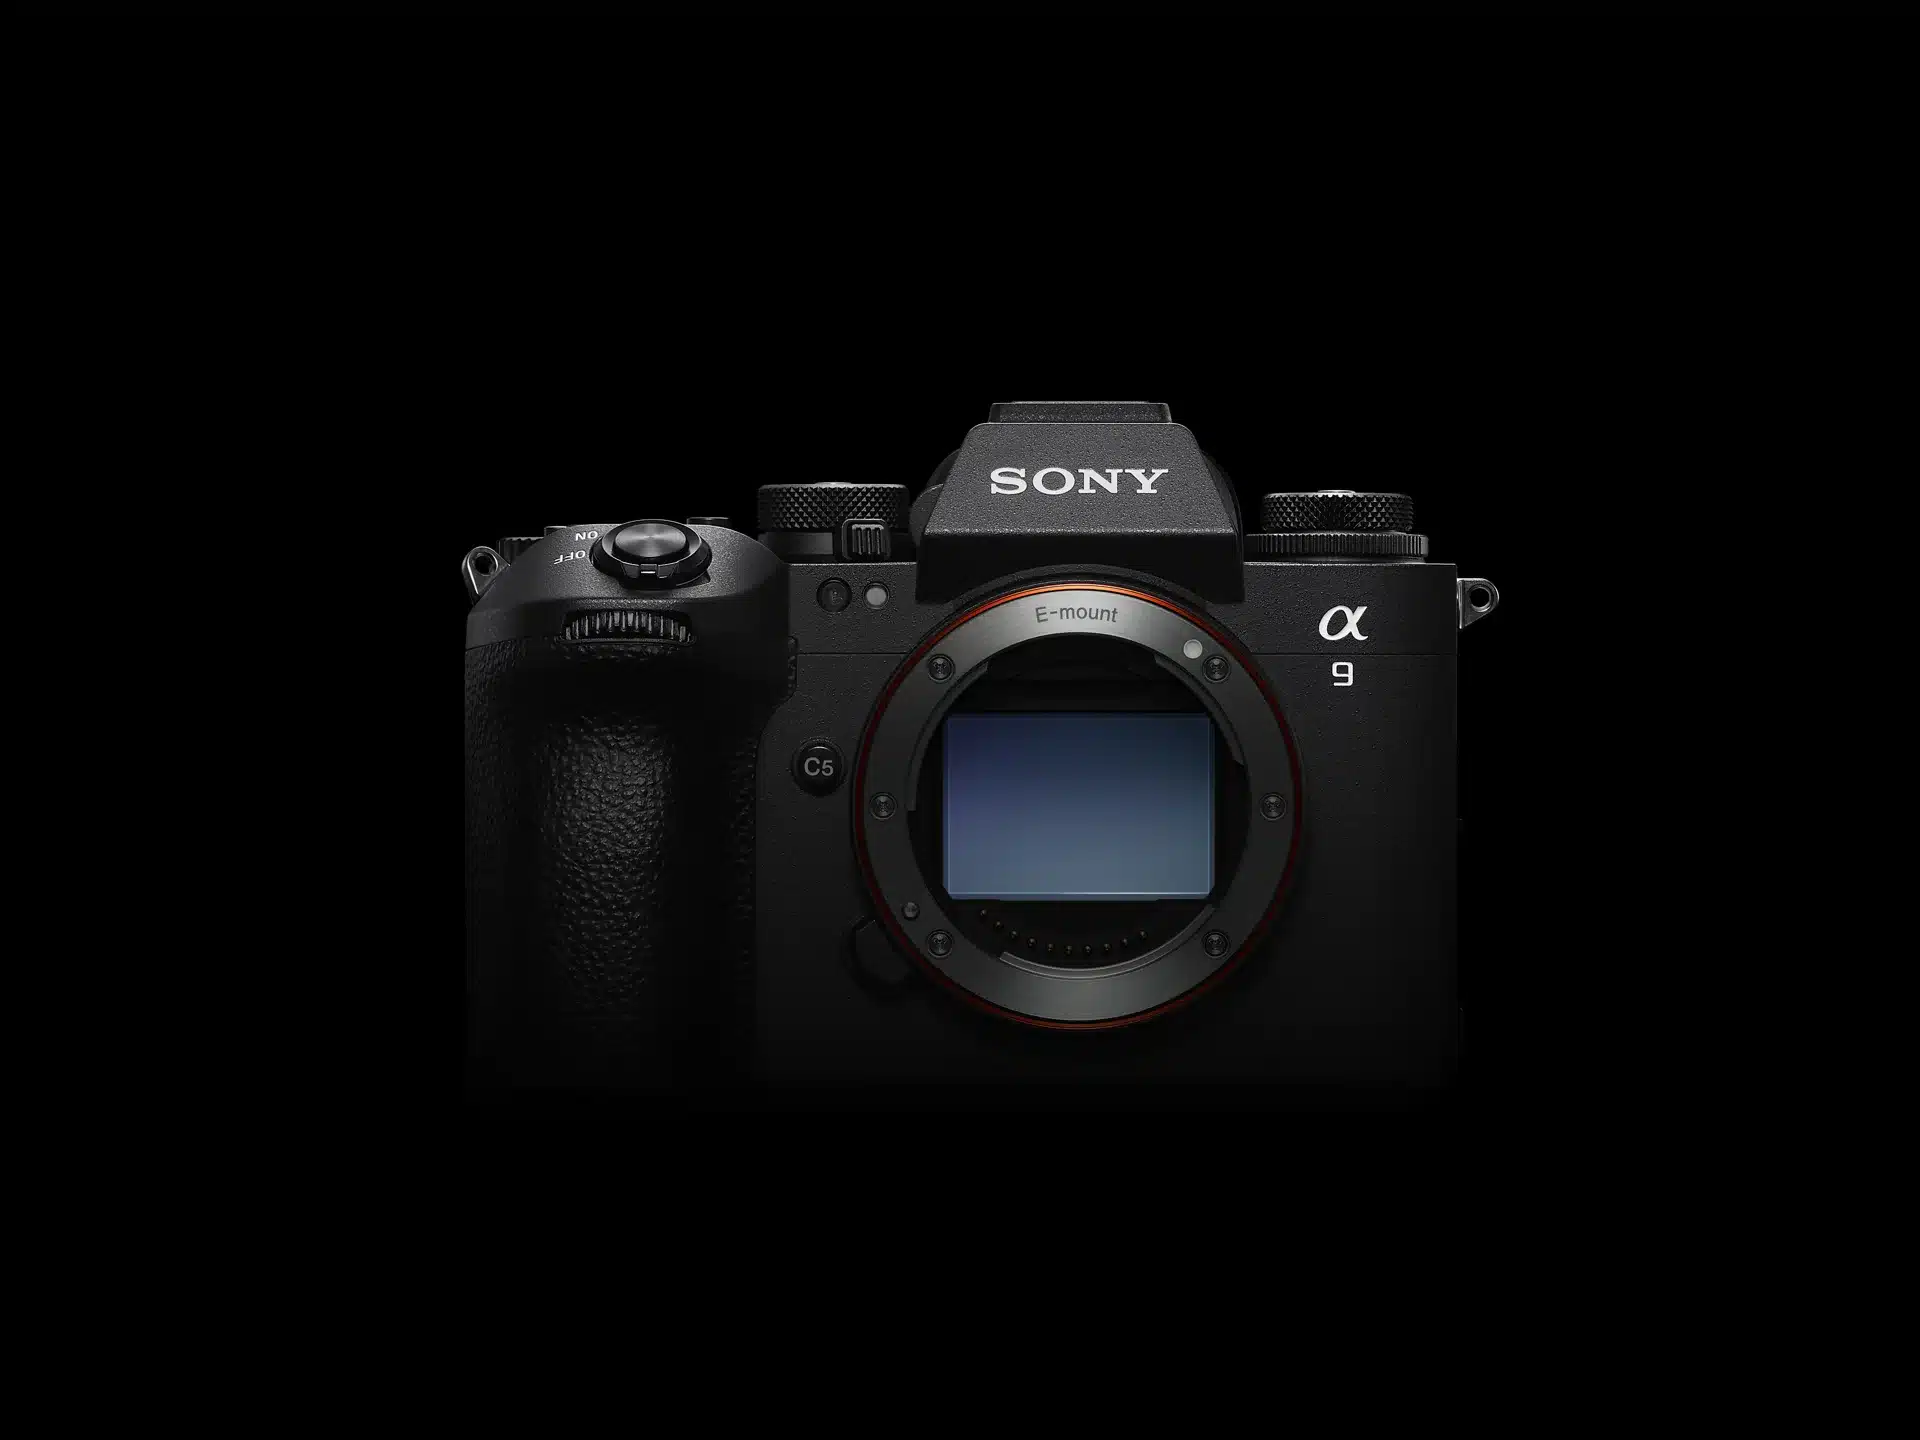 Sony、世界初グローバルシャッター方式を採用した『α9 III』超高速フルサイズミラーレスカメラを発表